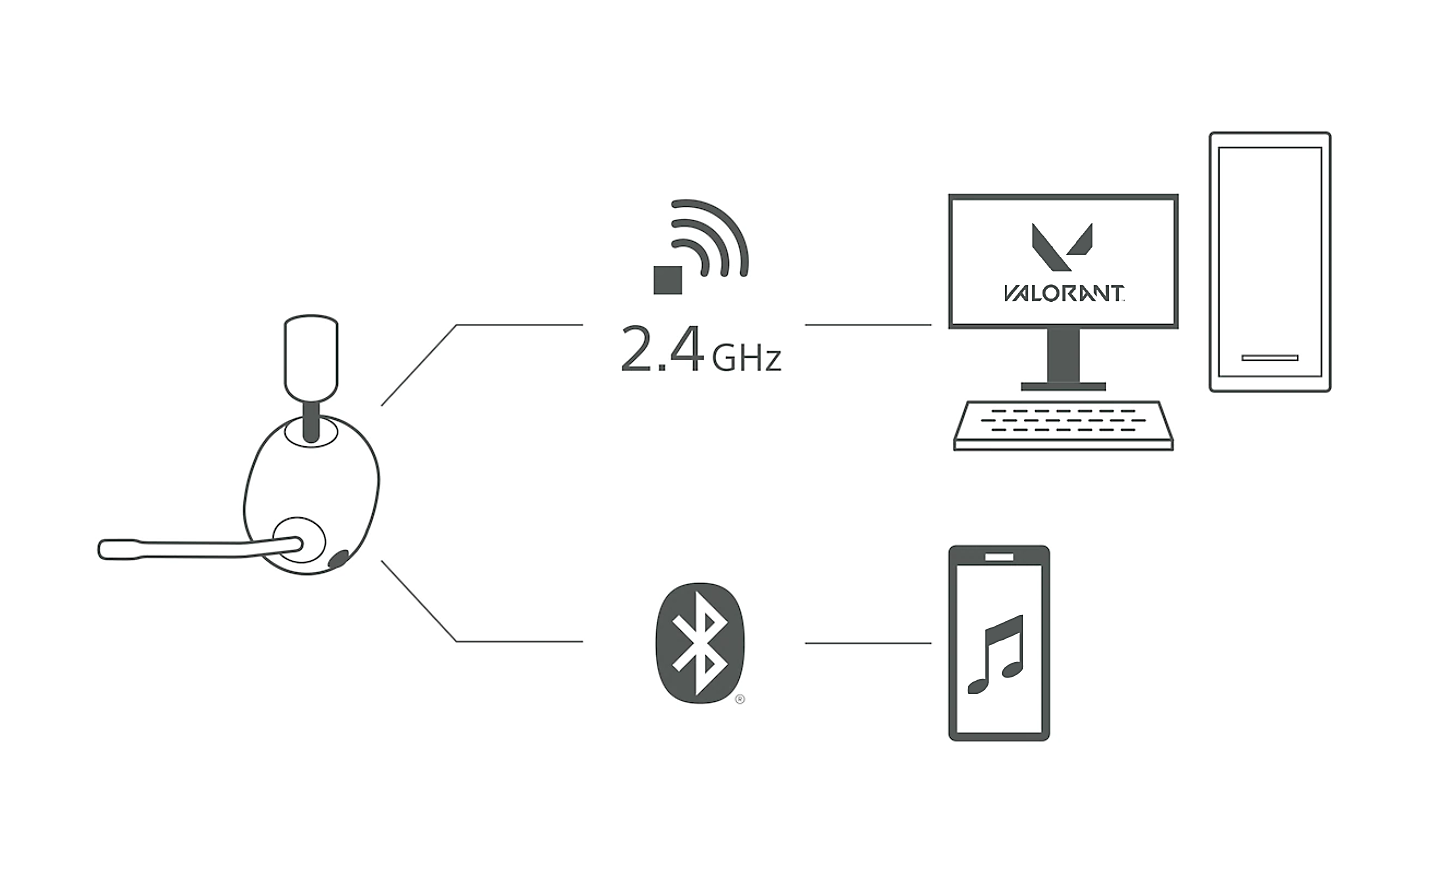 무선 2.4GHz 기호를 통해 나타낸 PC에 연결되는 선과 Bluetooth 기호를 통해 표현한 스마트폰으로 연결되는 선이 있는 H9 헤드셋의 이미지